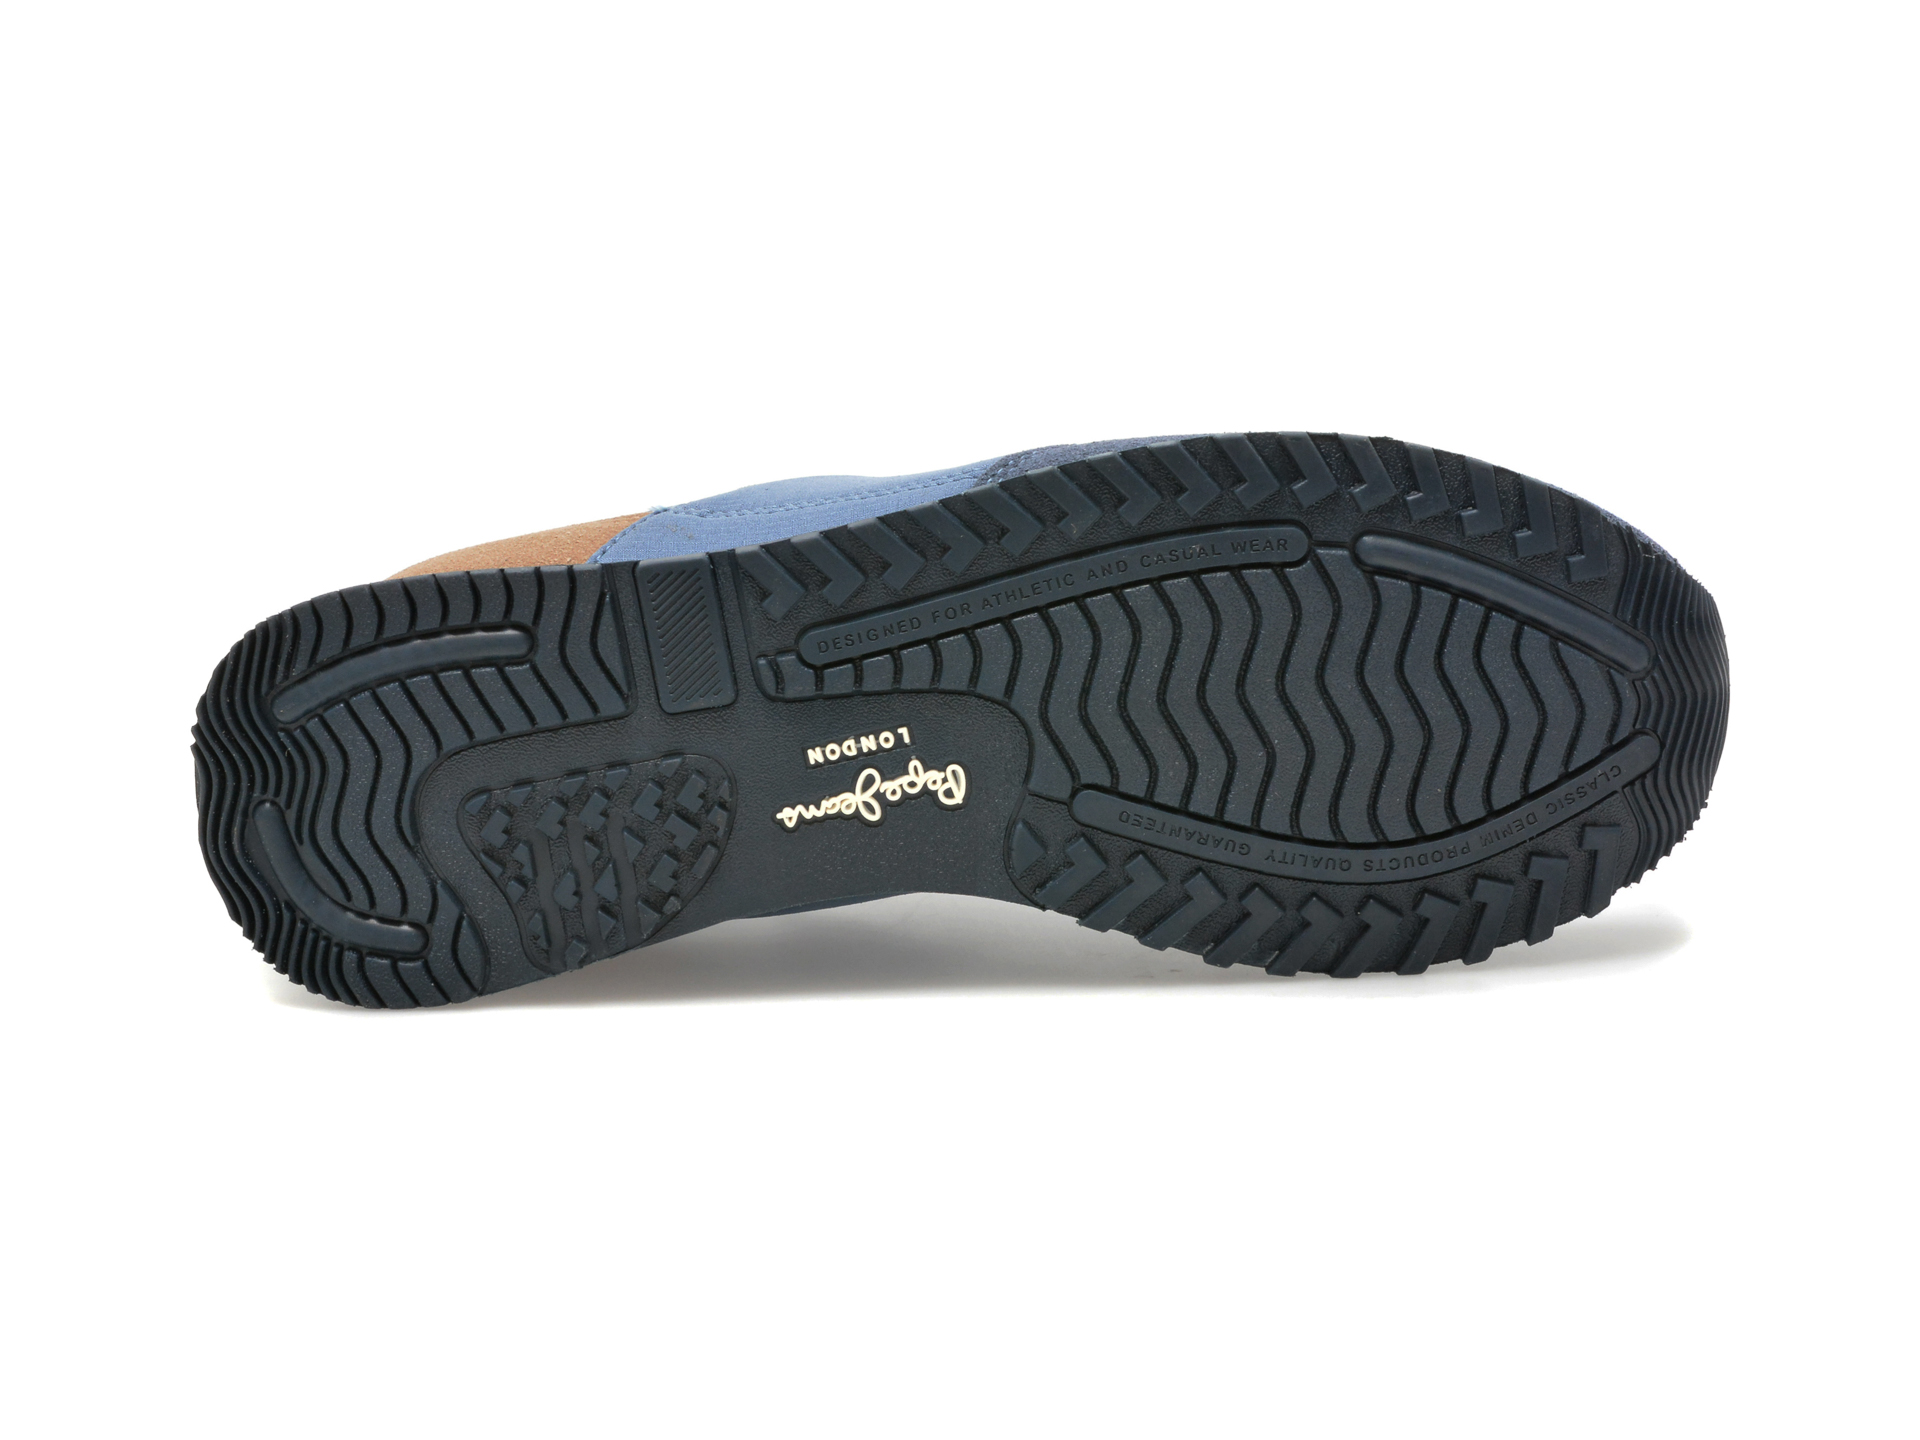 Pantofi PEPE JEANS bleumarin, MS40001, din material textil